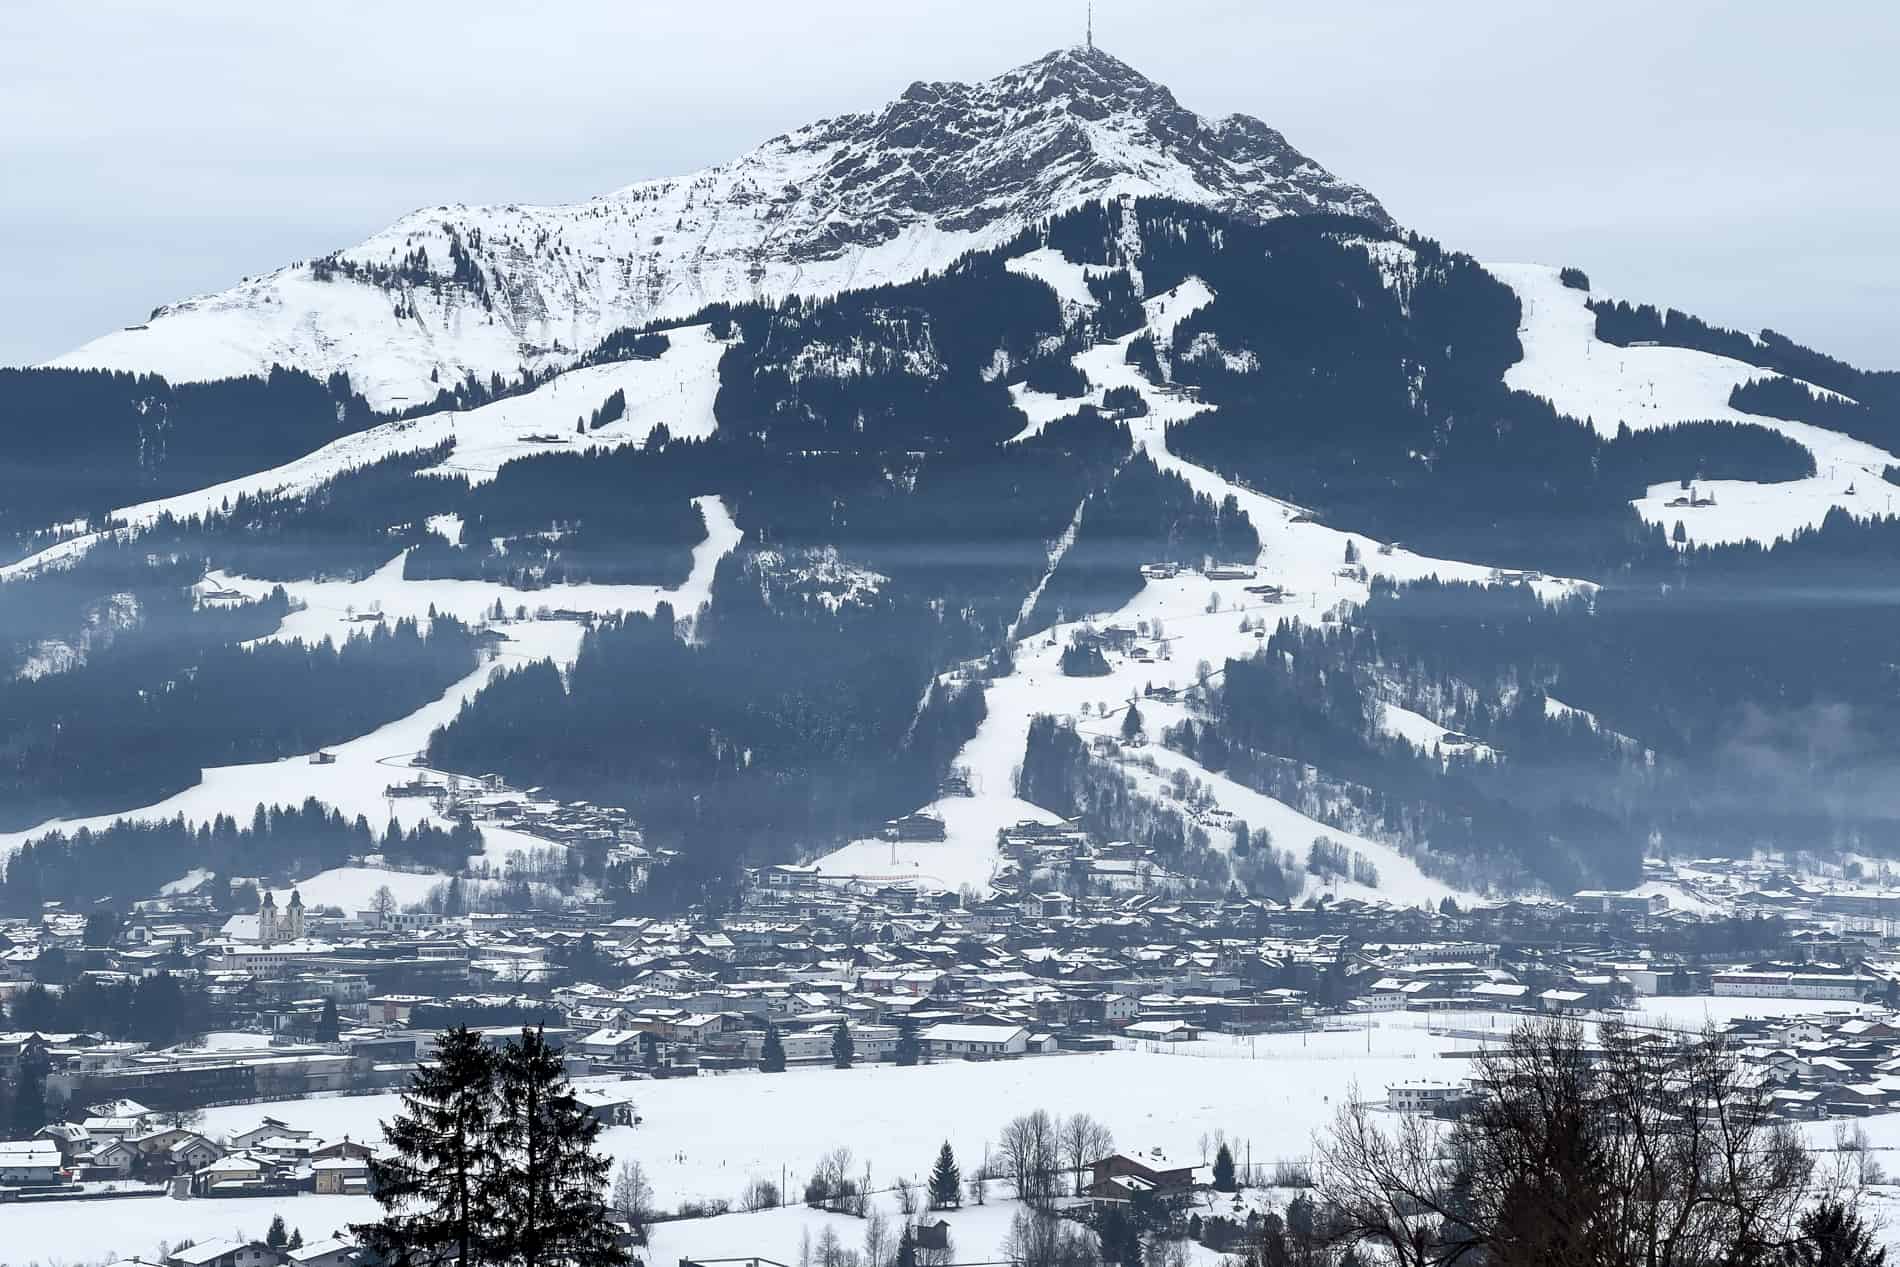 The Kitzbüheler Horn mountain in Austria covered in snow and ski slopes, rising above the village of St. Johann in Tirol. 